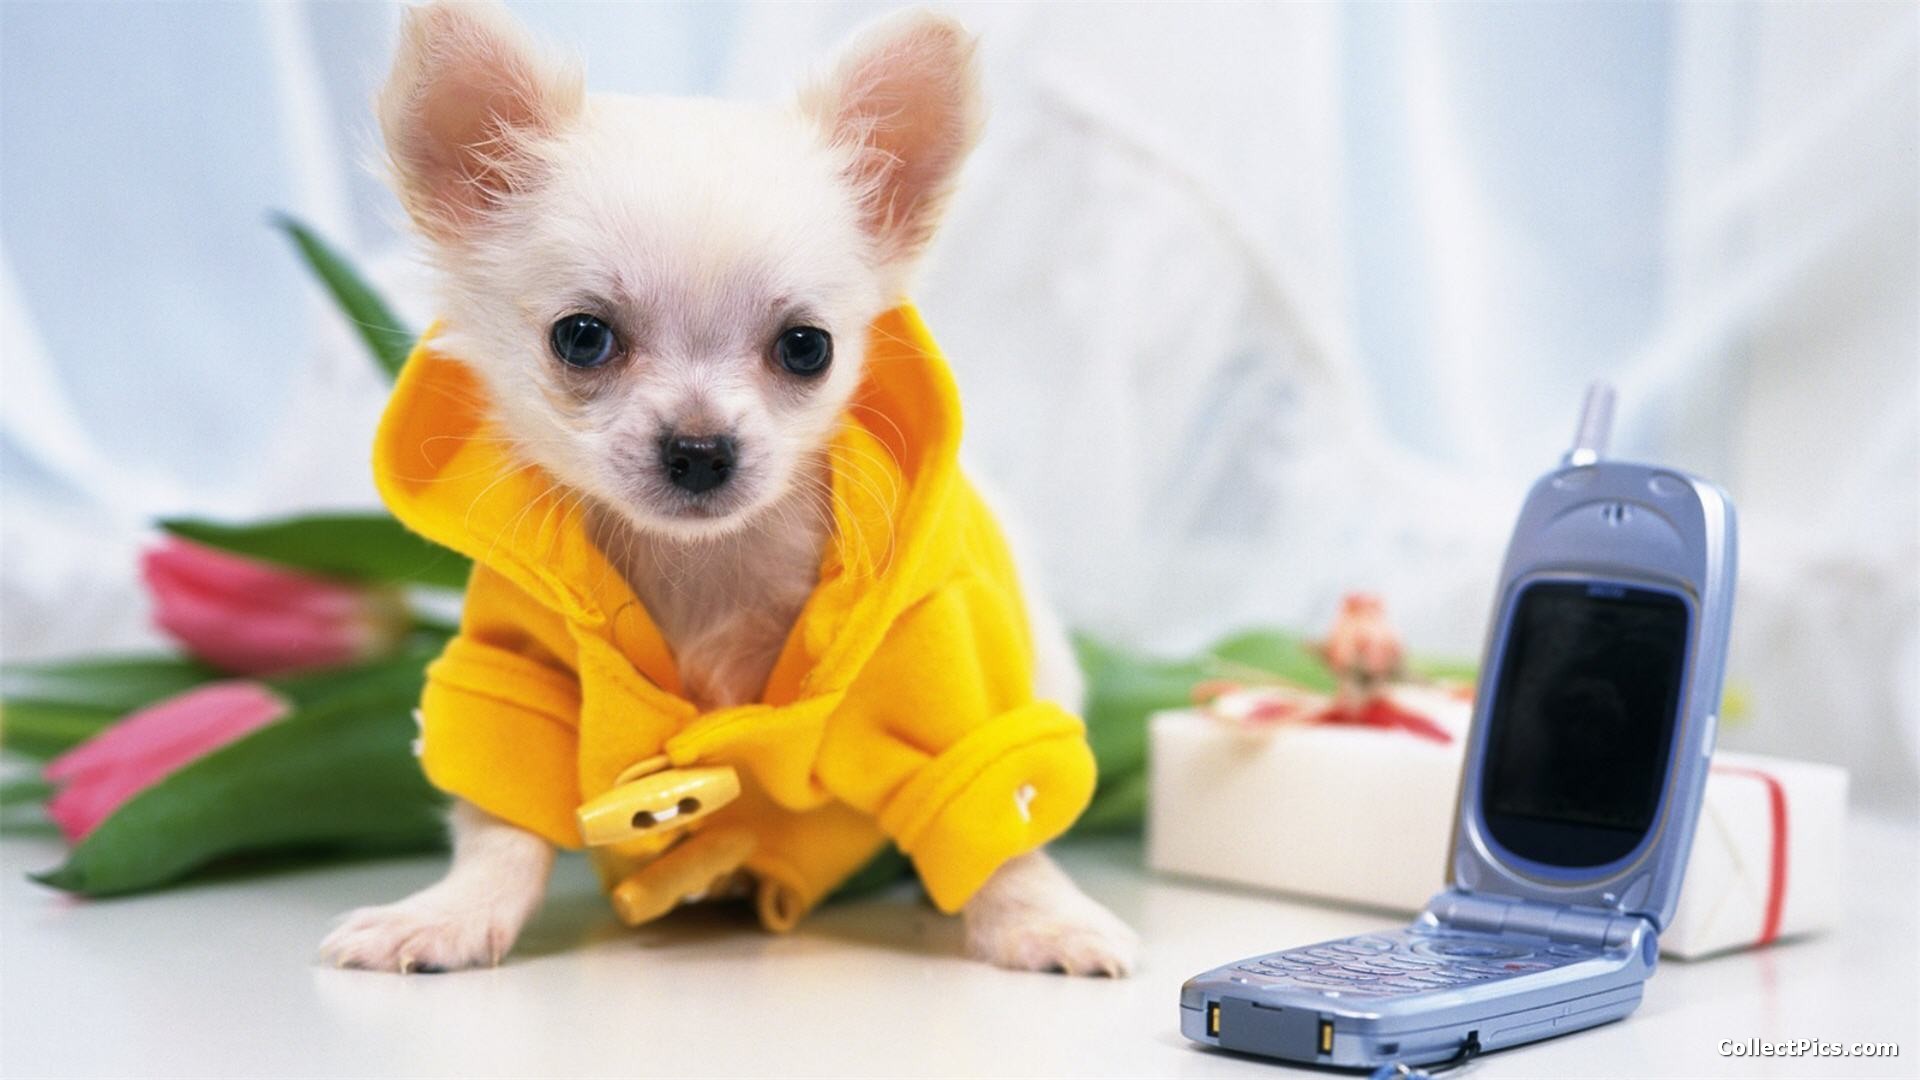 Descarga gratuita de fondo de pantalla para móvil de Animales, Perros, Perro.